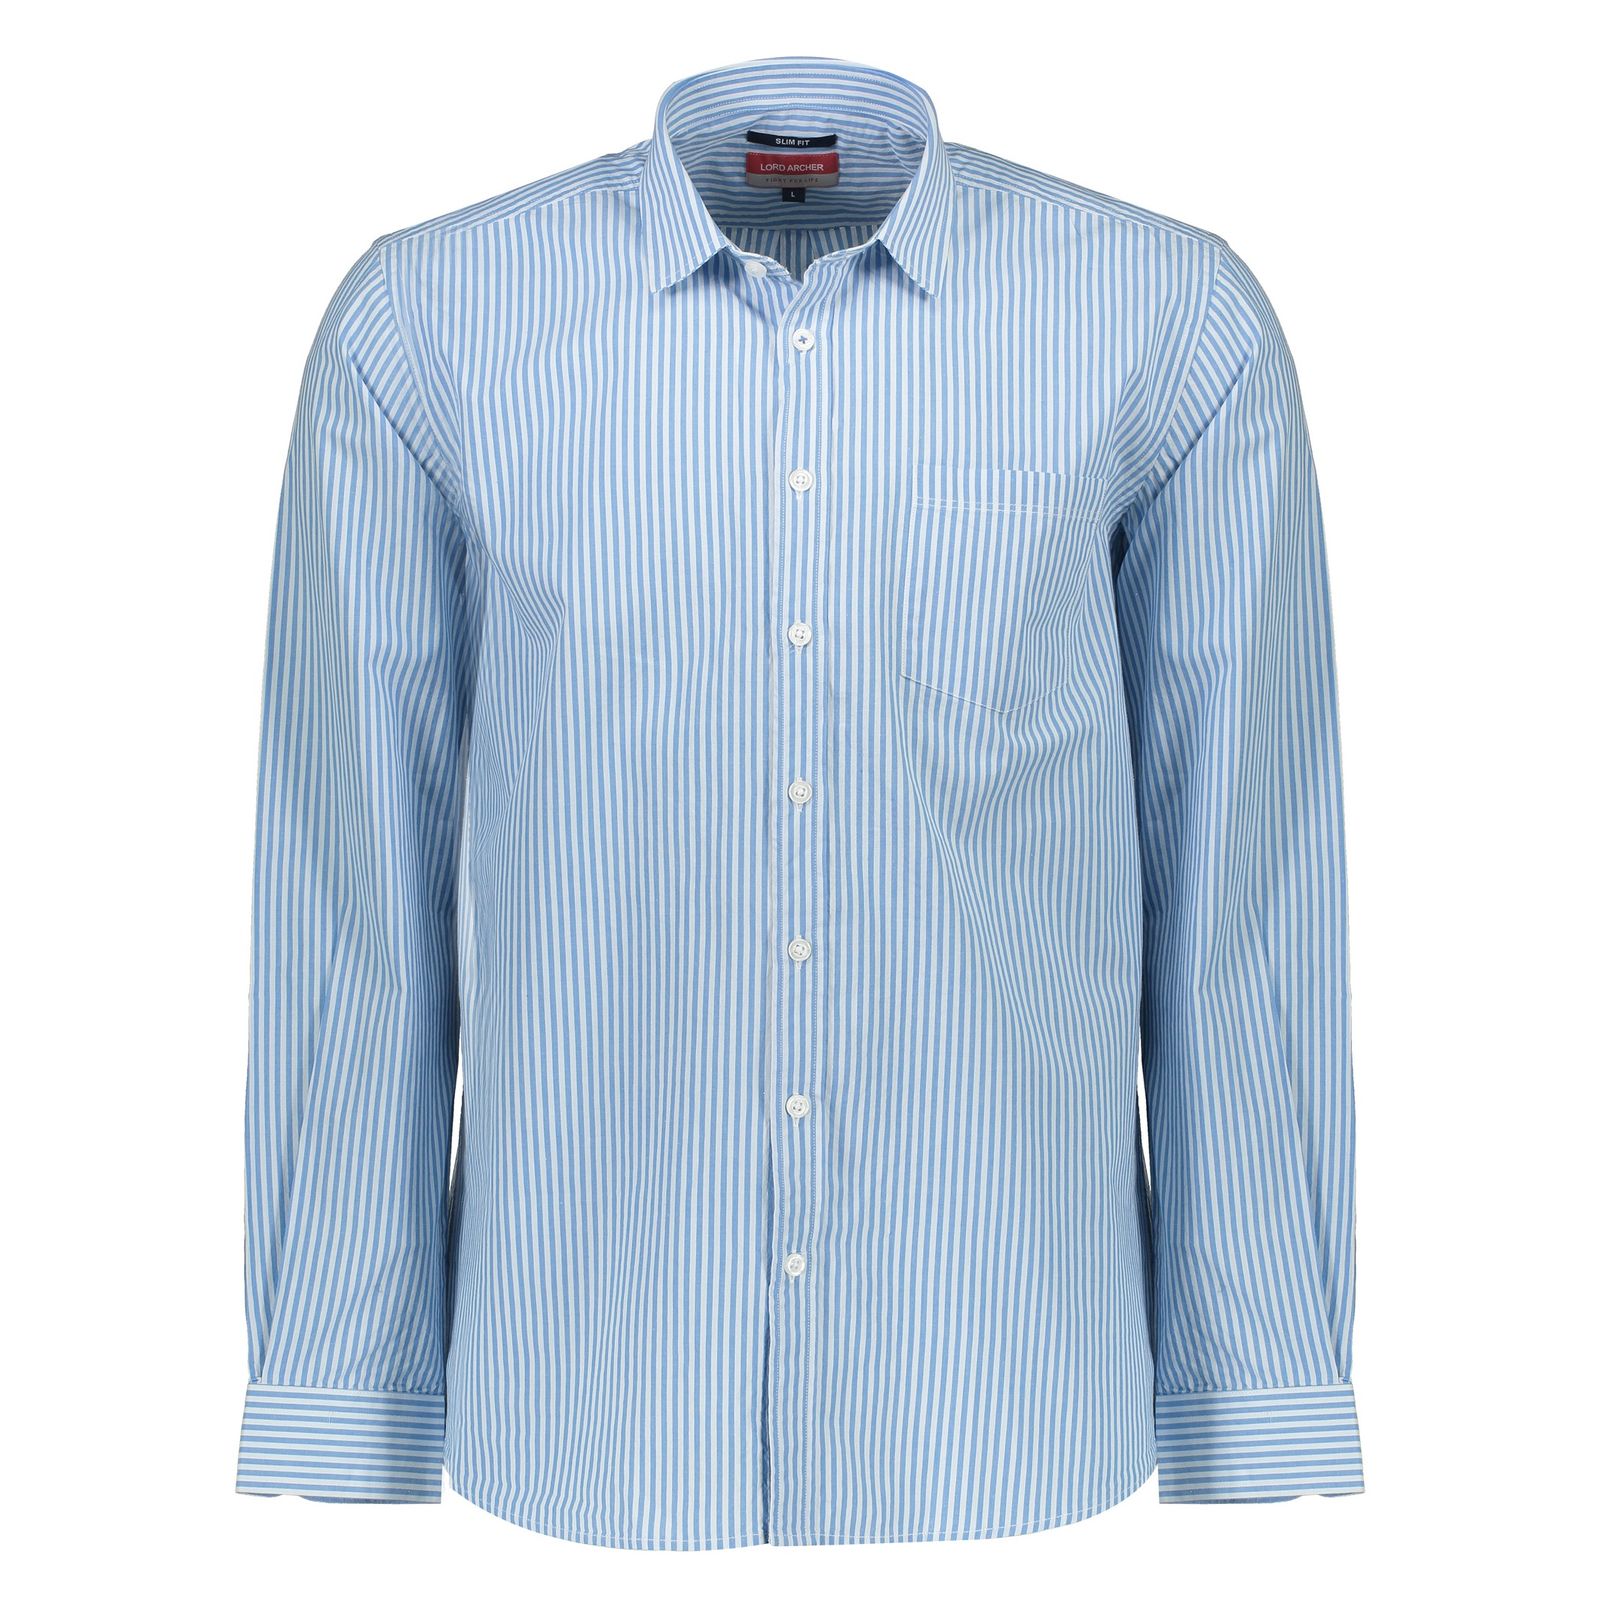 پیراهن مردانه لرد آرچر مدل 20011425101 - آبی سفید - 2